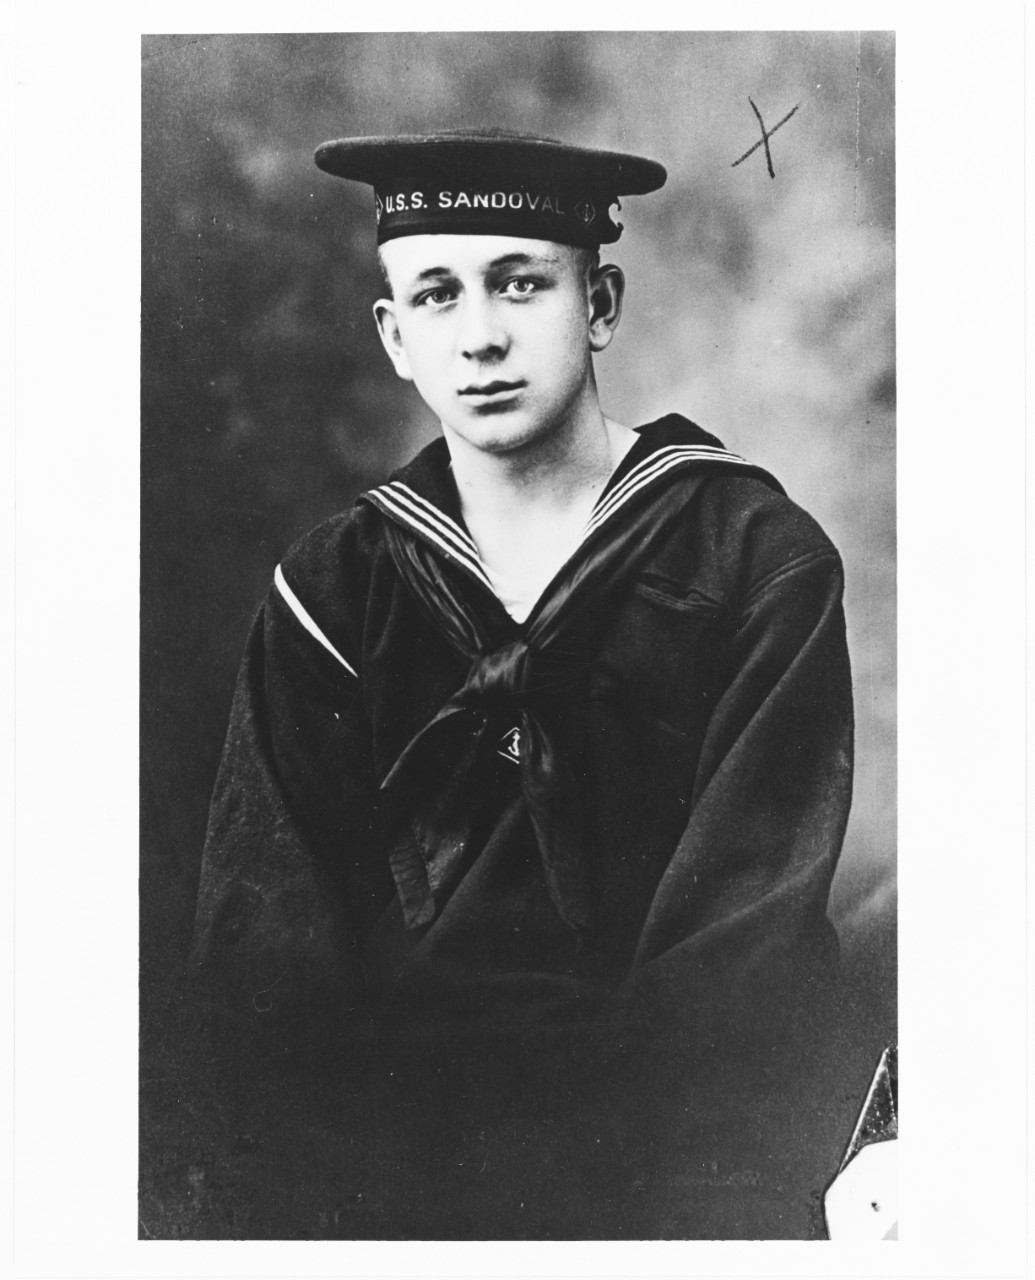 A sailor of USS SANDOVAL, circa 1919.